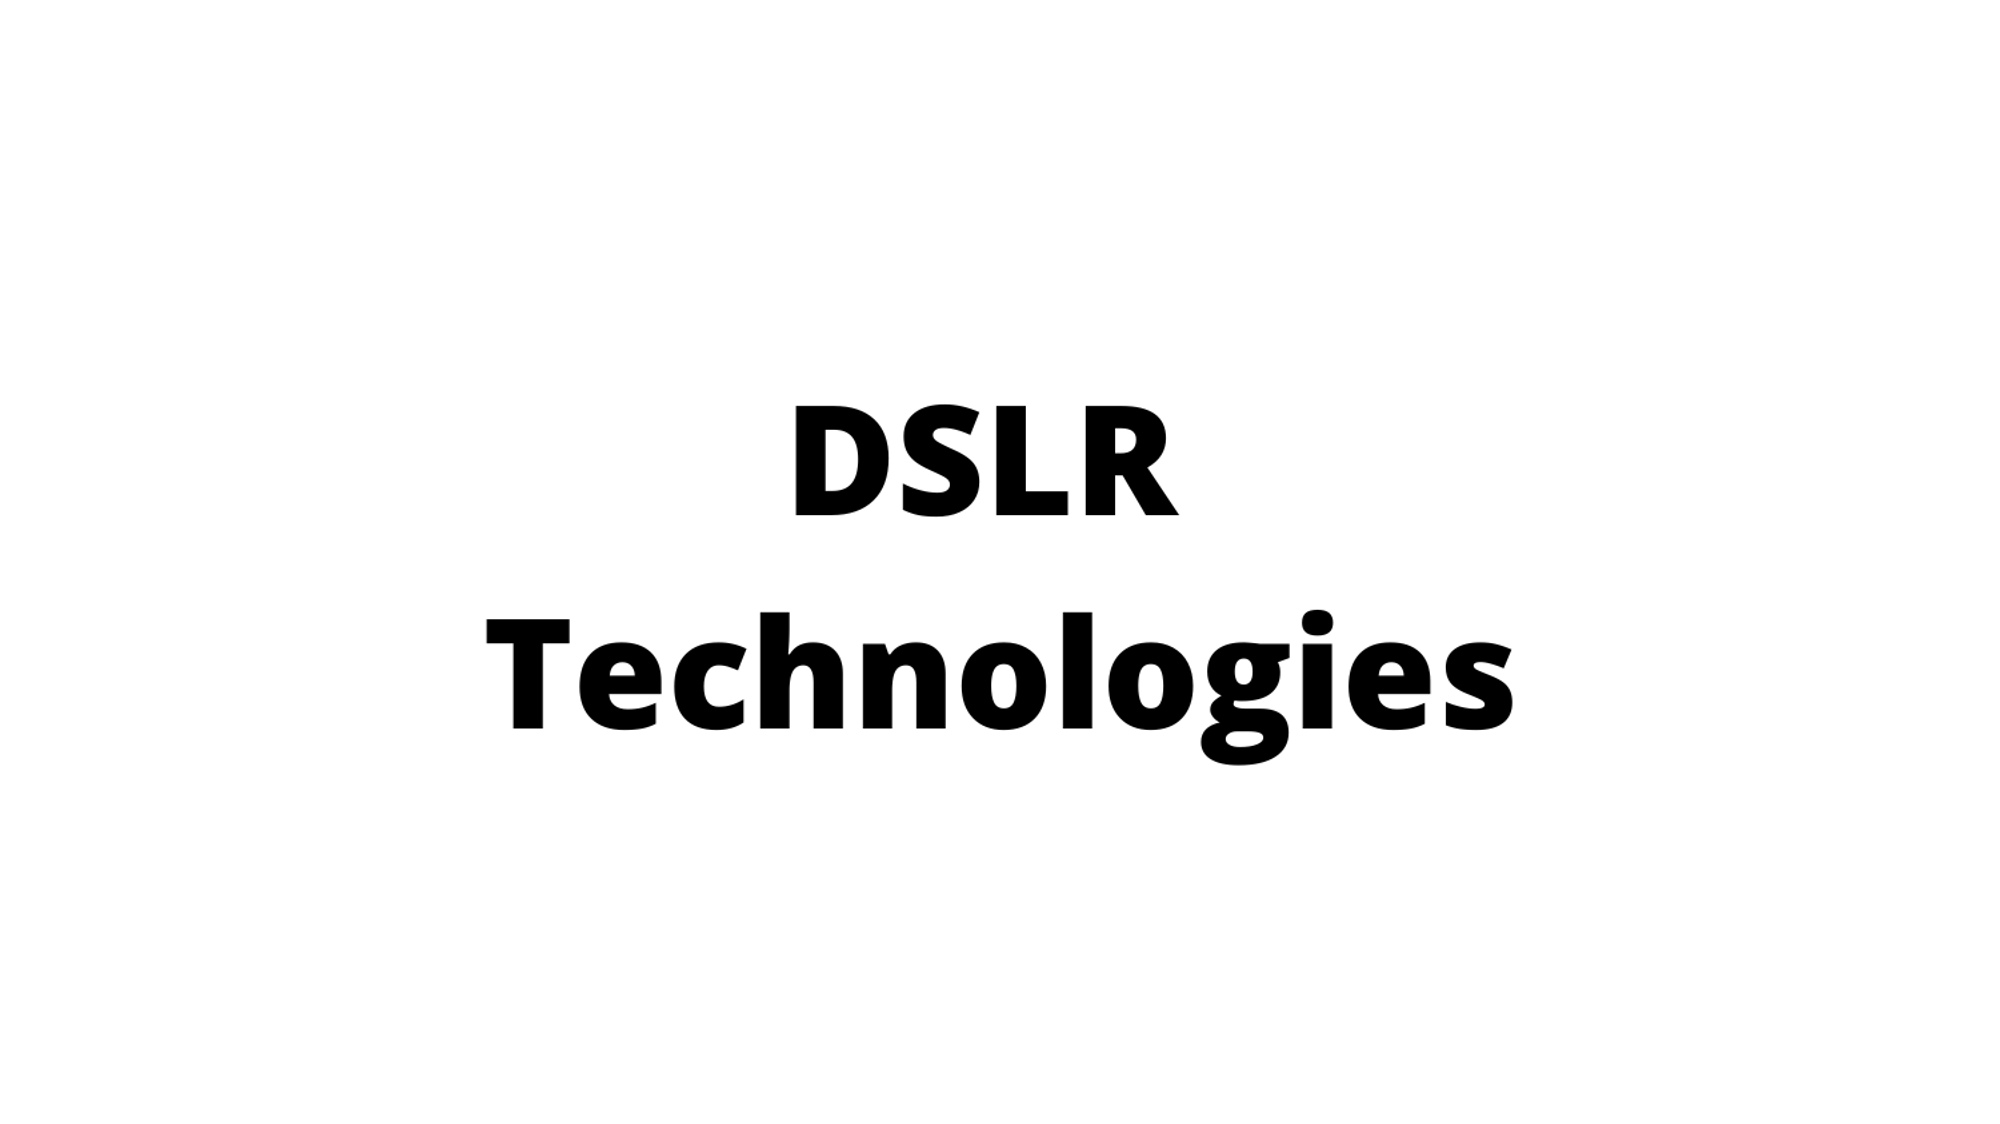 DSLR Technologies